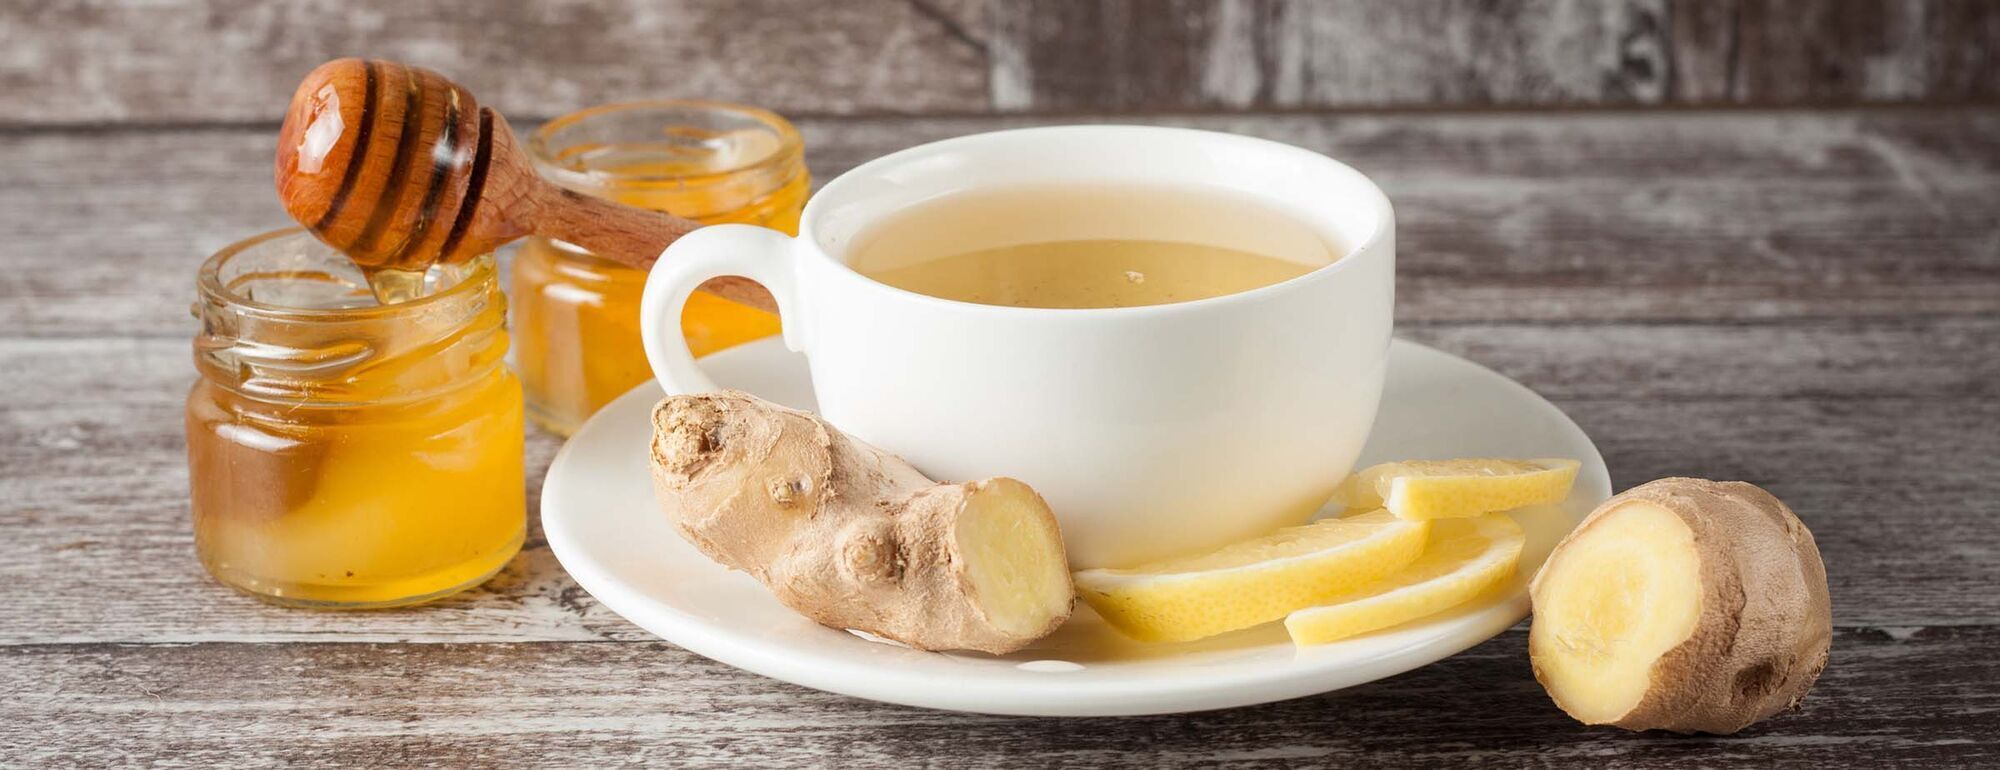 Чому не можна додавати мед в окріп одразу після заварювання чаю: розвіюємо міфи 